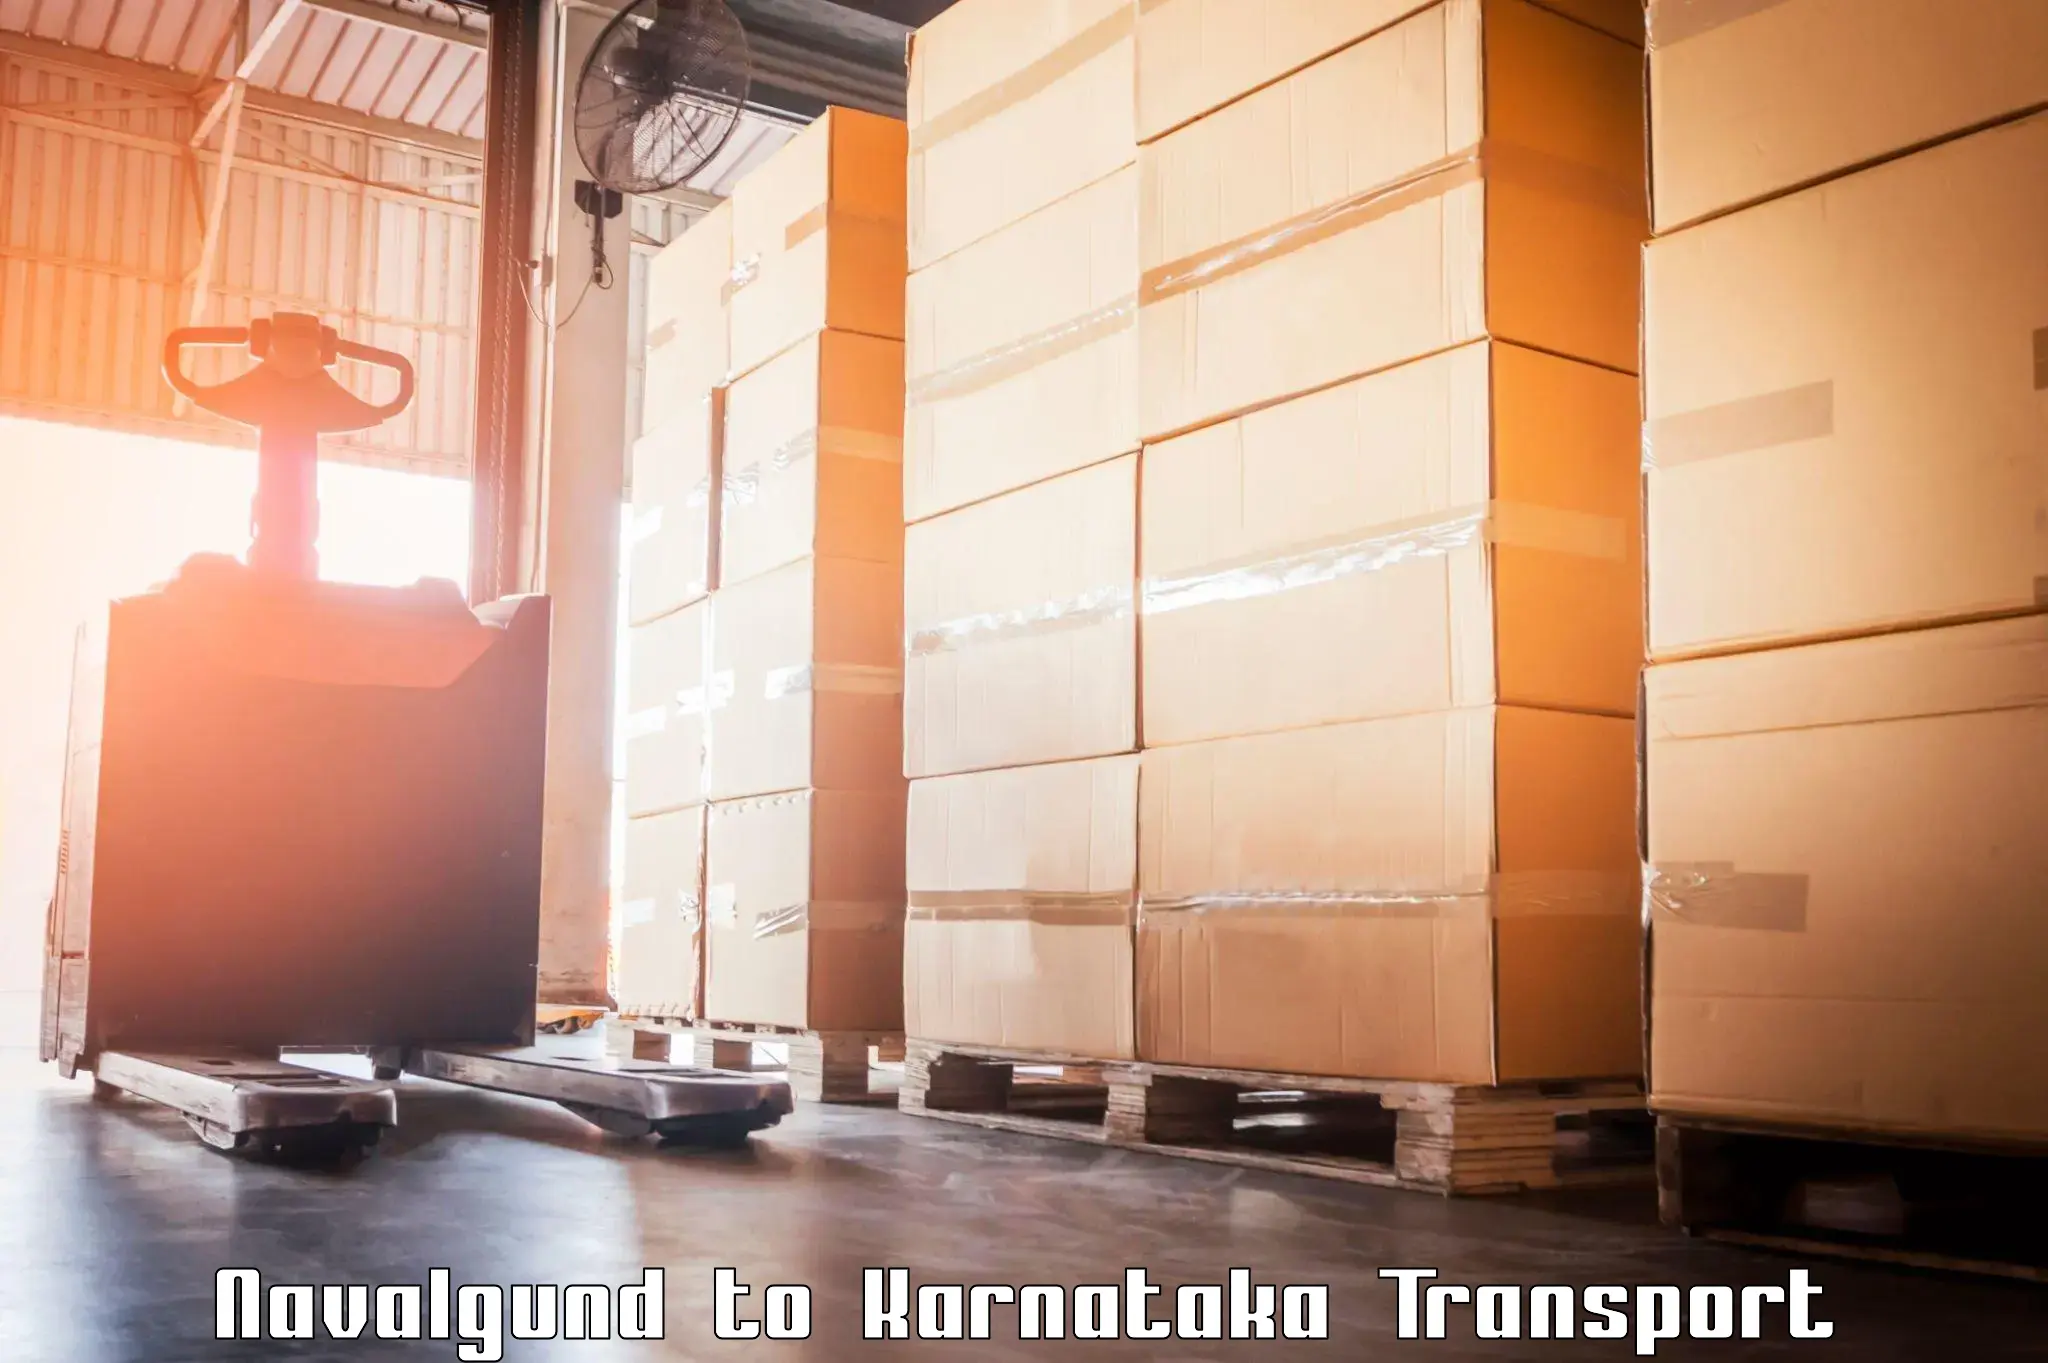 India truck logistics services Navalgund to Gurmatkal